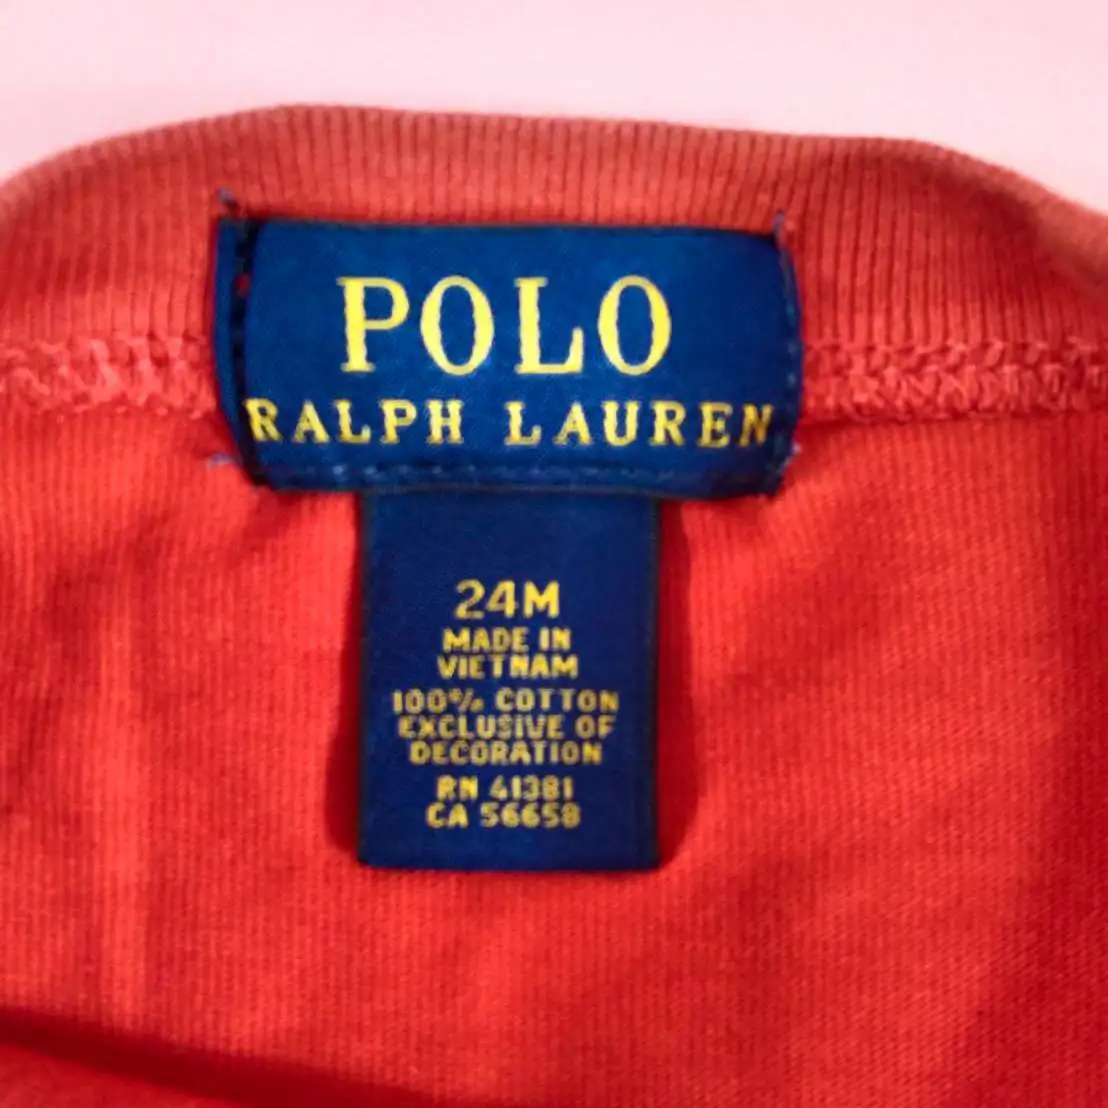 Polo เสื้อยืดแขนสั้นสีแดง ไซส์18m